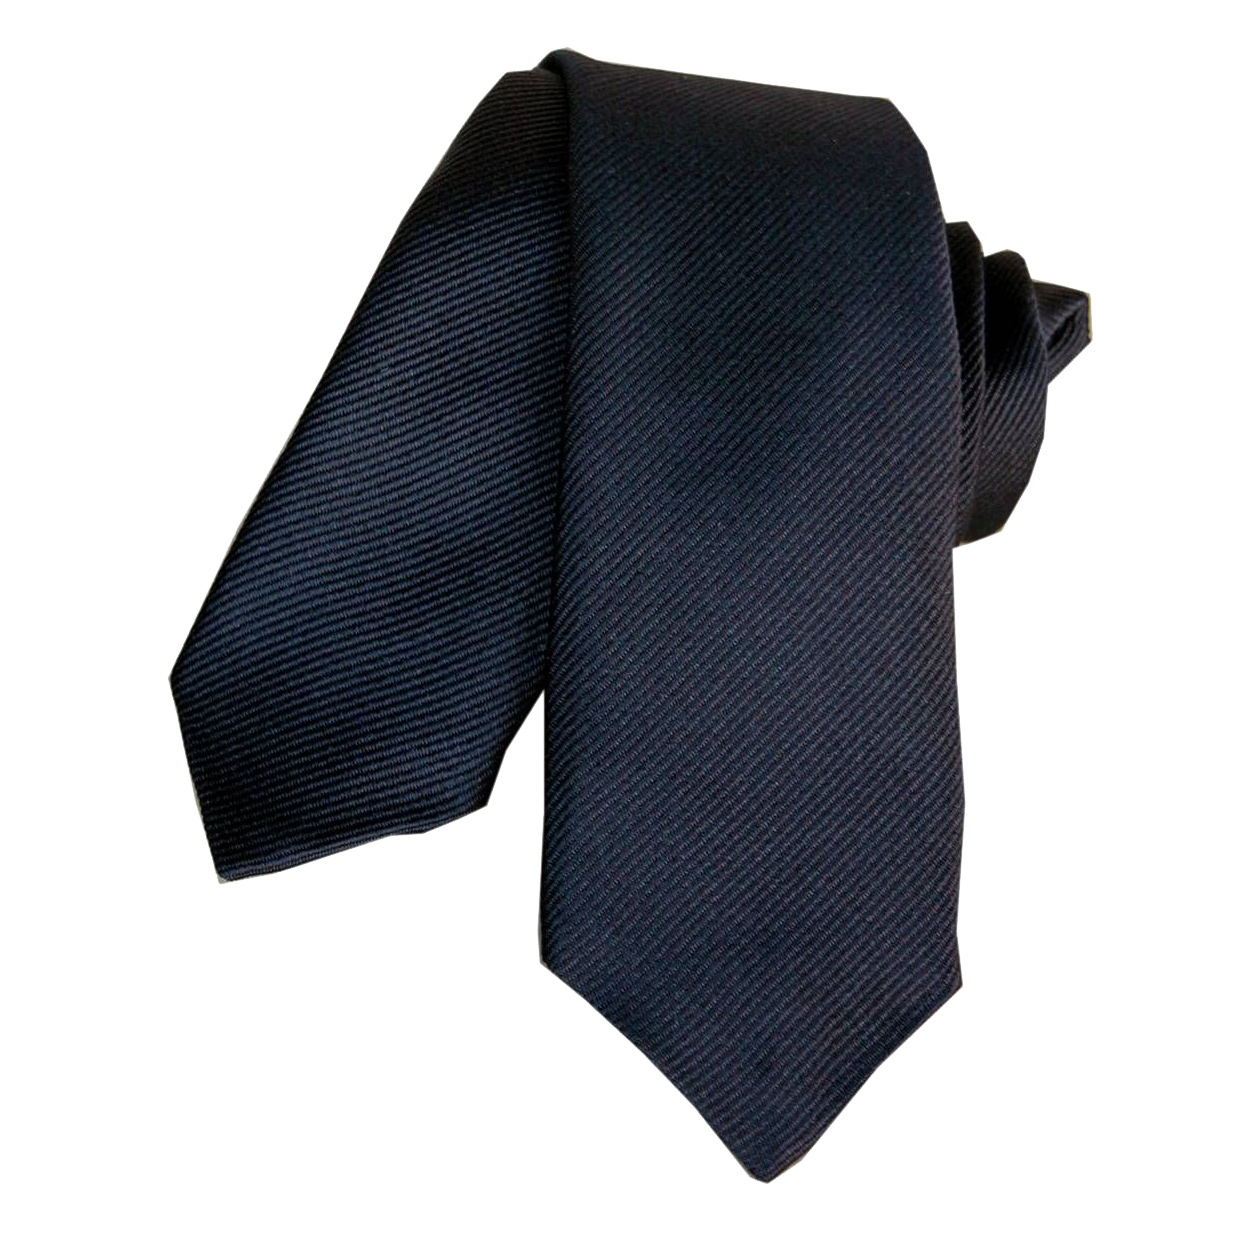 Cravate slim Segni et Disegni Classique slim segni Bleu Marine Soie